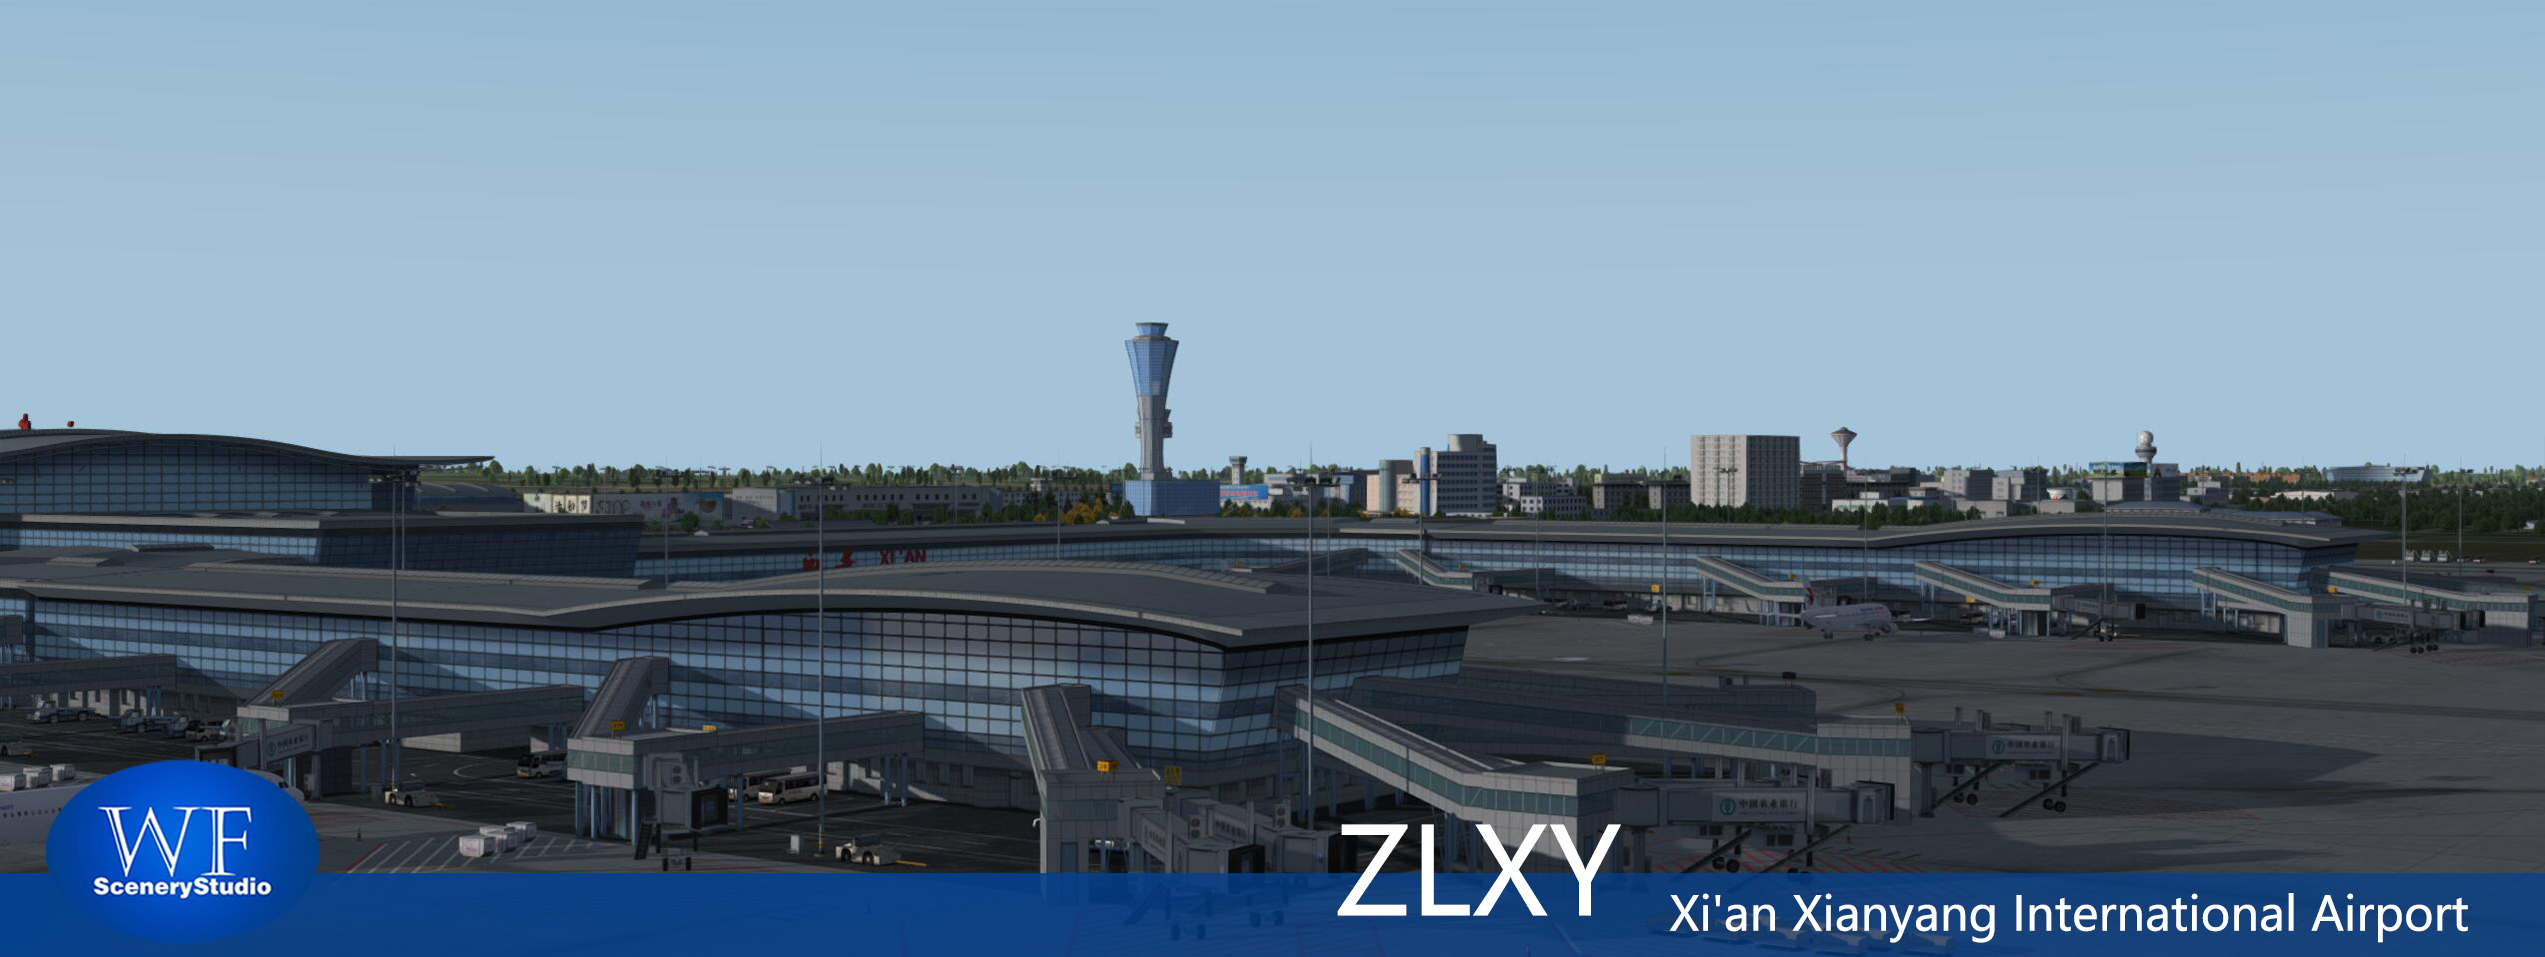 西安咸阳国际机场FSX和P3DV3 版本发布-8592 